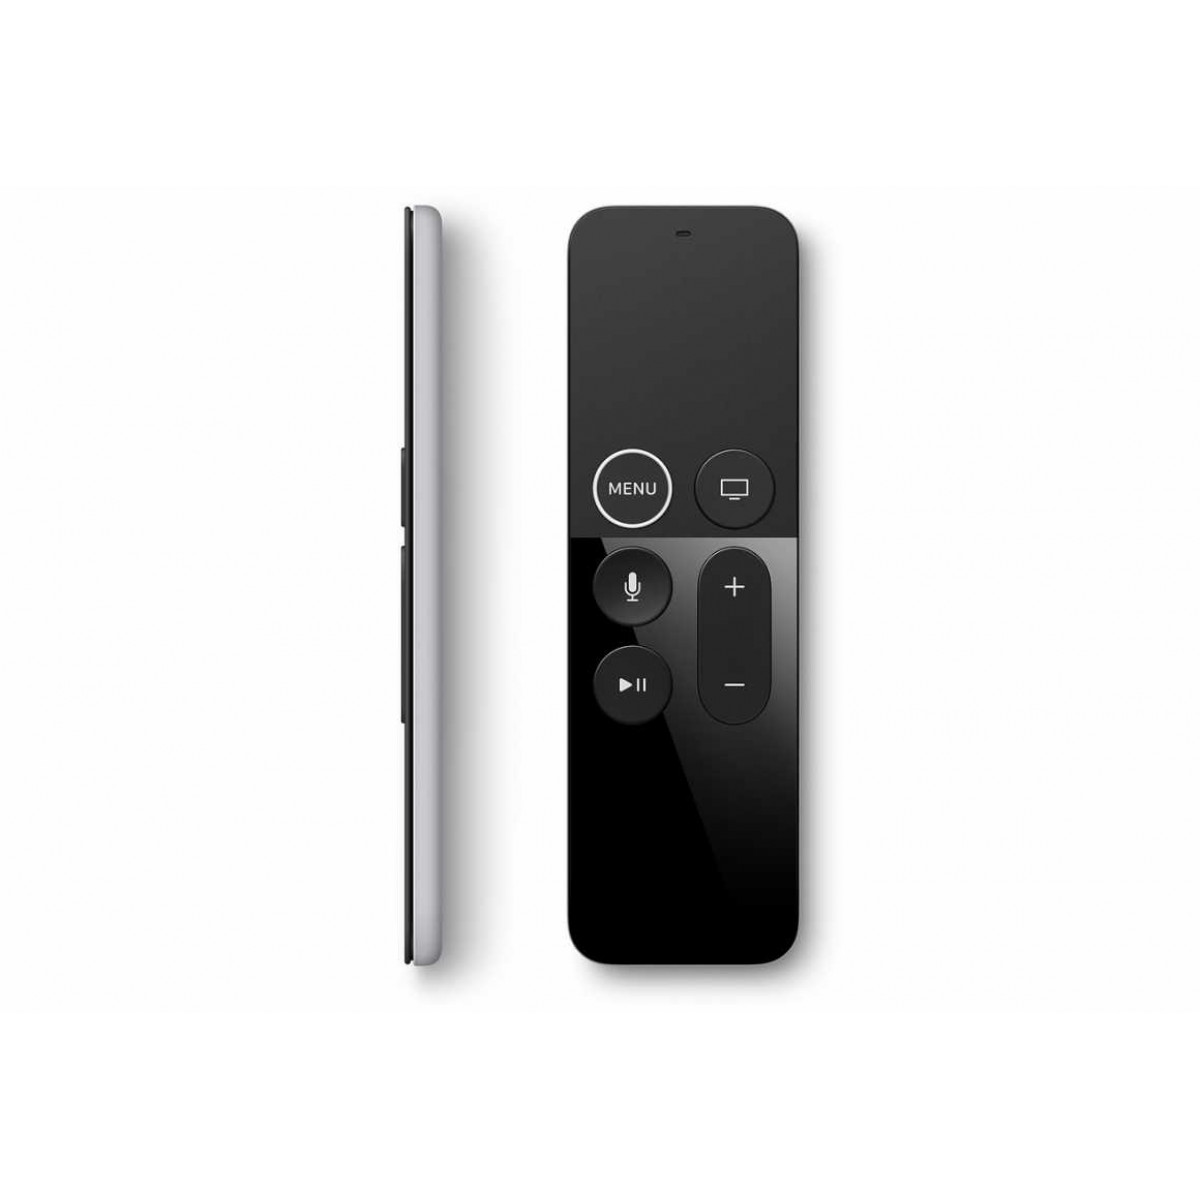 Пульт дистанционного управления Apple TV Remote